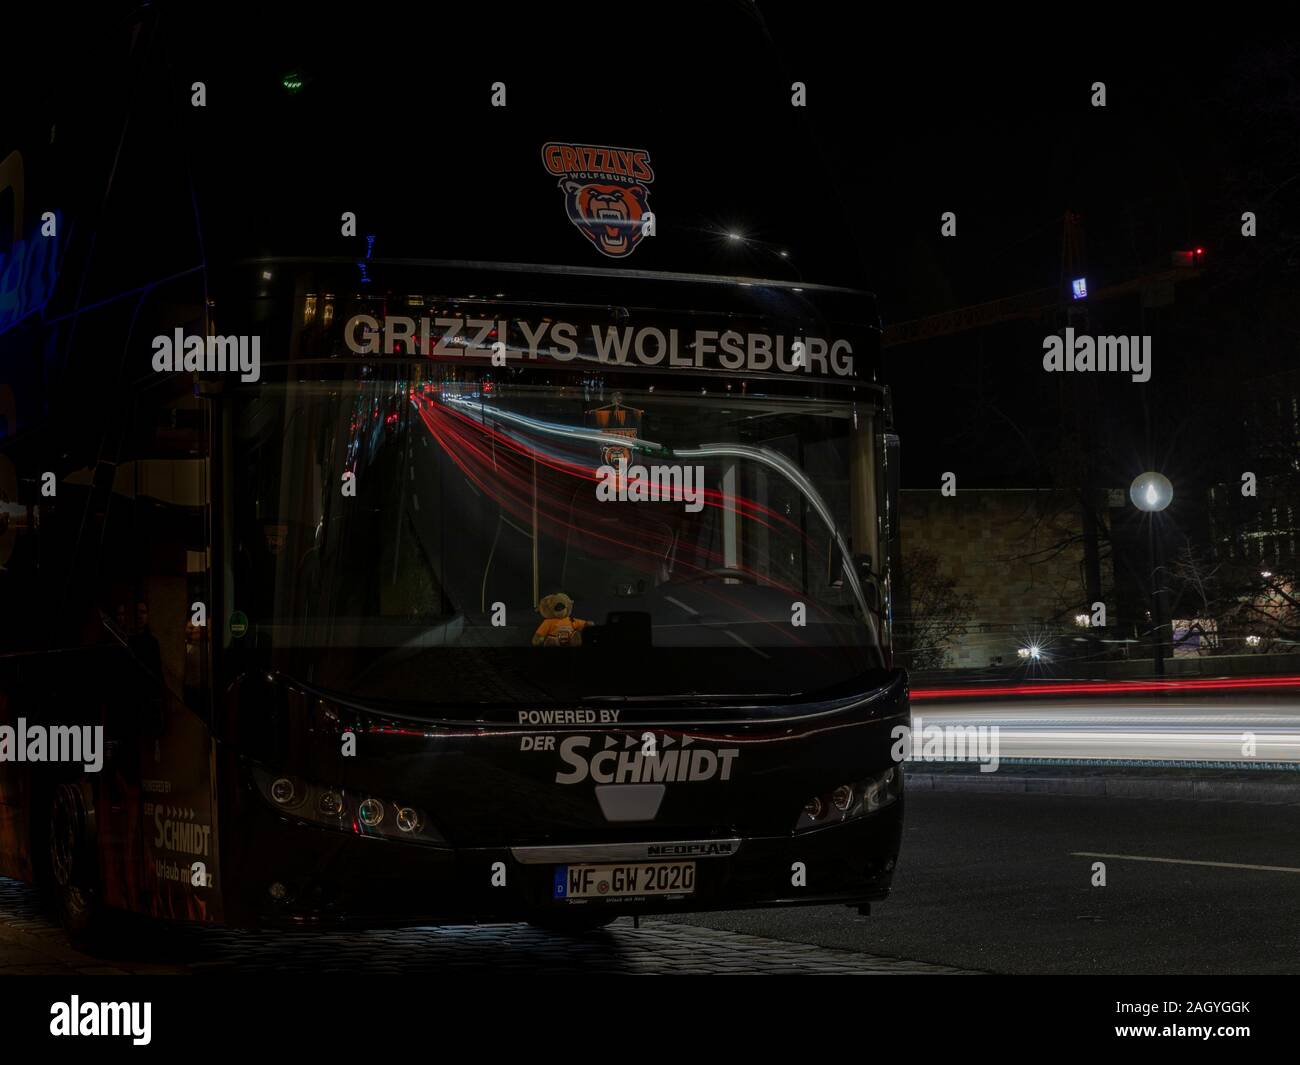 Les équipes de sport professionnel allemand voyage avec parfois des jeux les bus. Des bus de l'équipe de hockey sur glace de grizzlys Wolfsburg est stationné dans la ville de Nuremberg. Banque D'Images